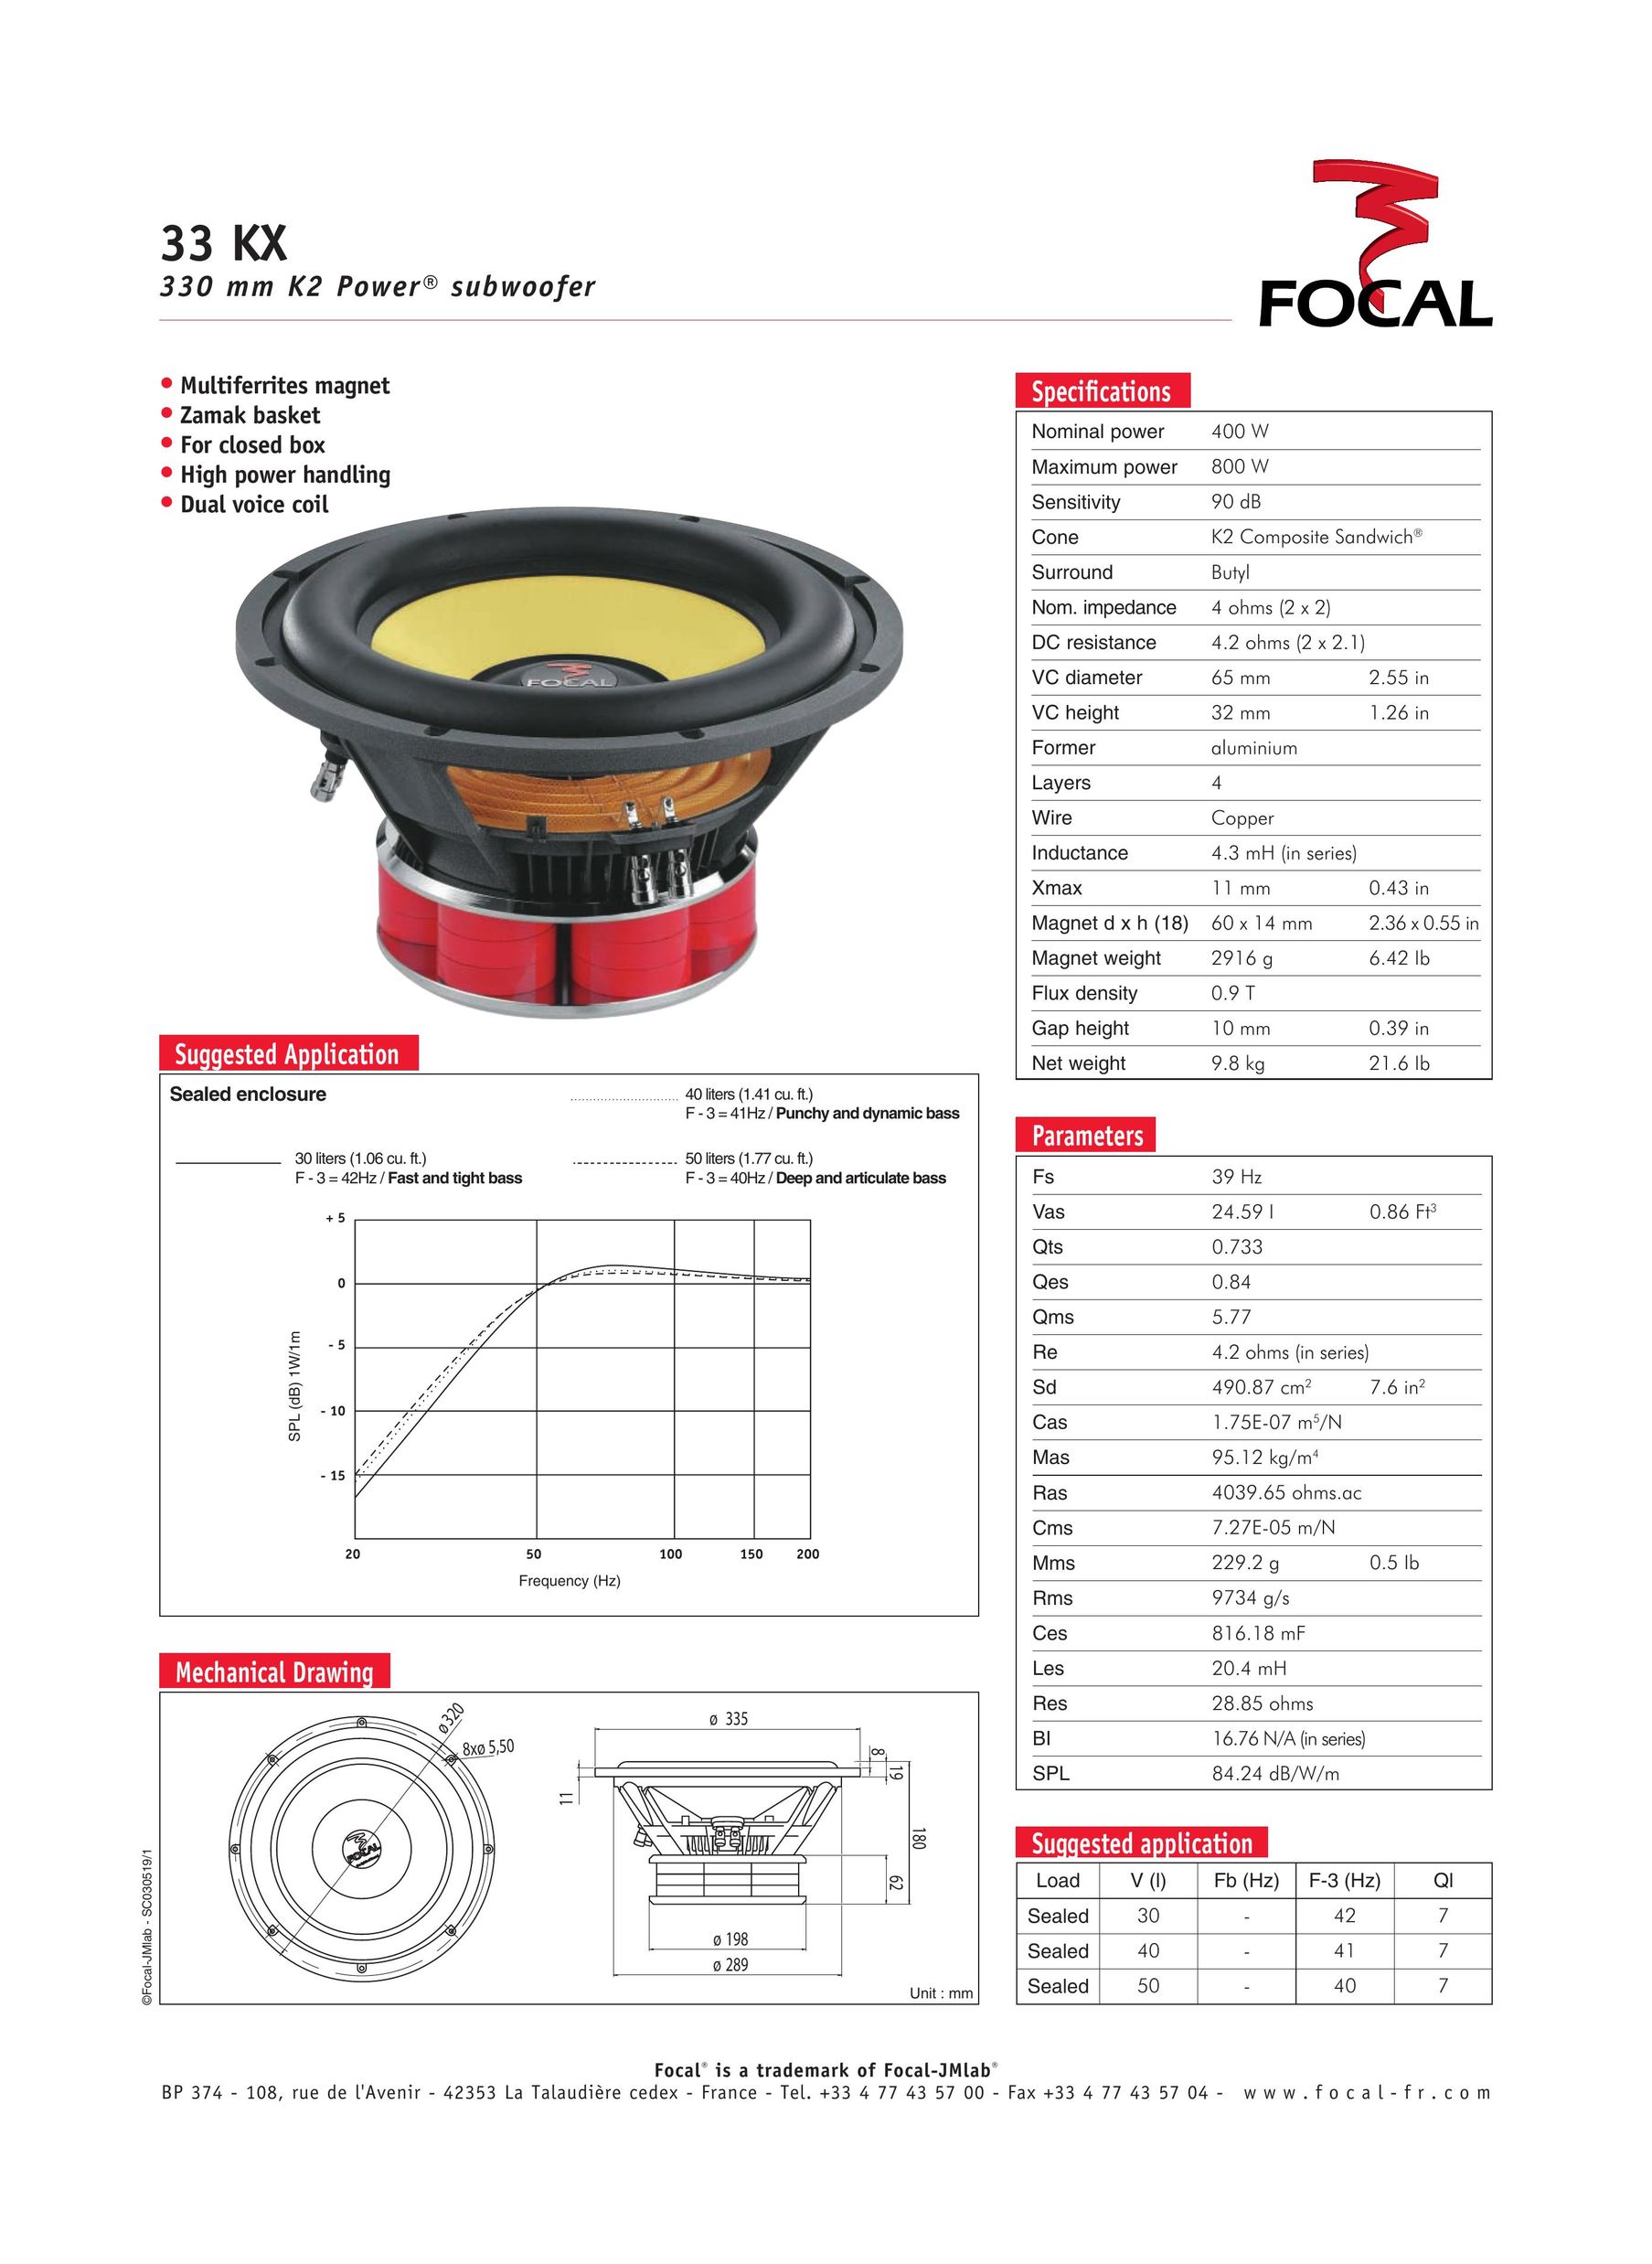 Focal 33 KX Car Speaker User Manual